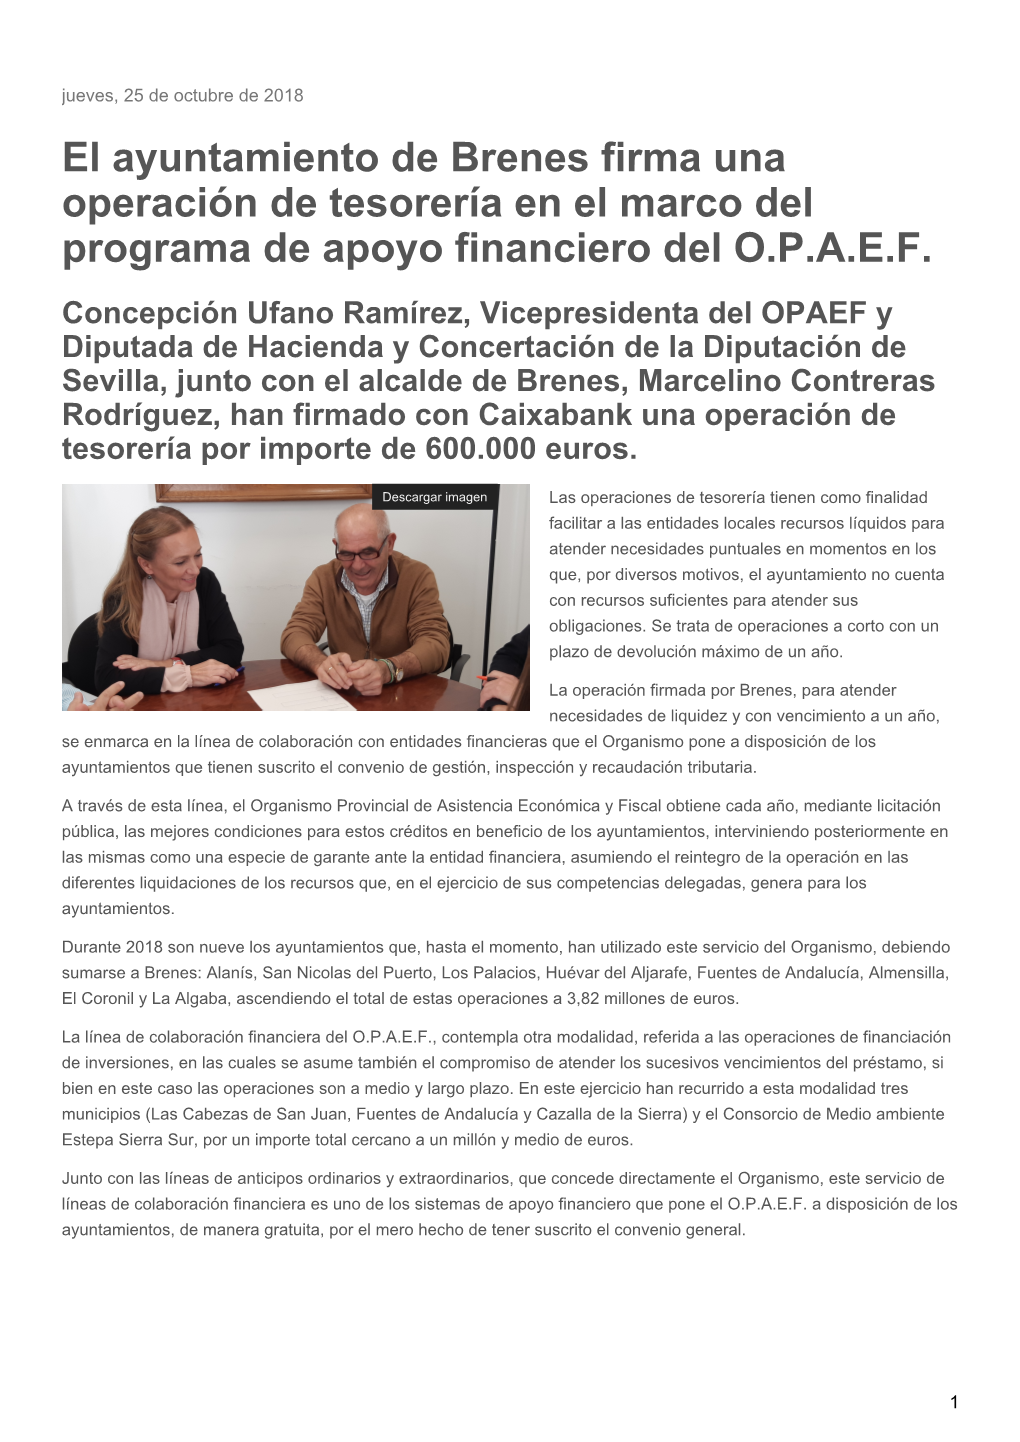 El Ayuntamiento De Brenes Firma Una Operación De Tesorería En El Marco Del Programa De Apoyo Financiero Del O.P.A.E.F